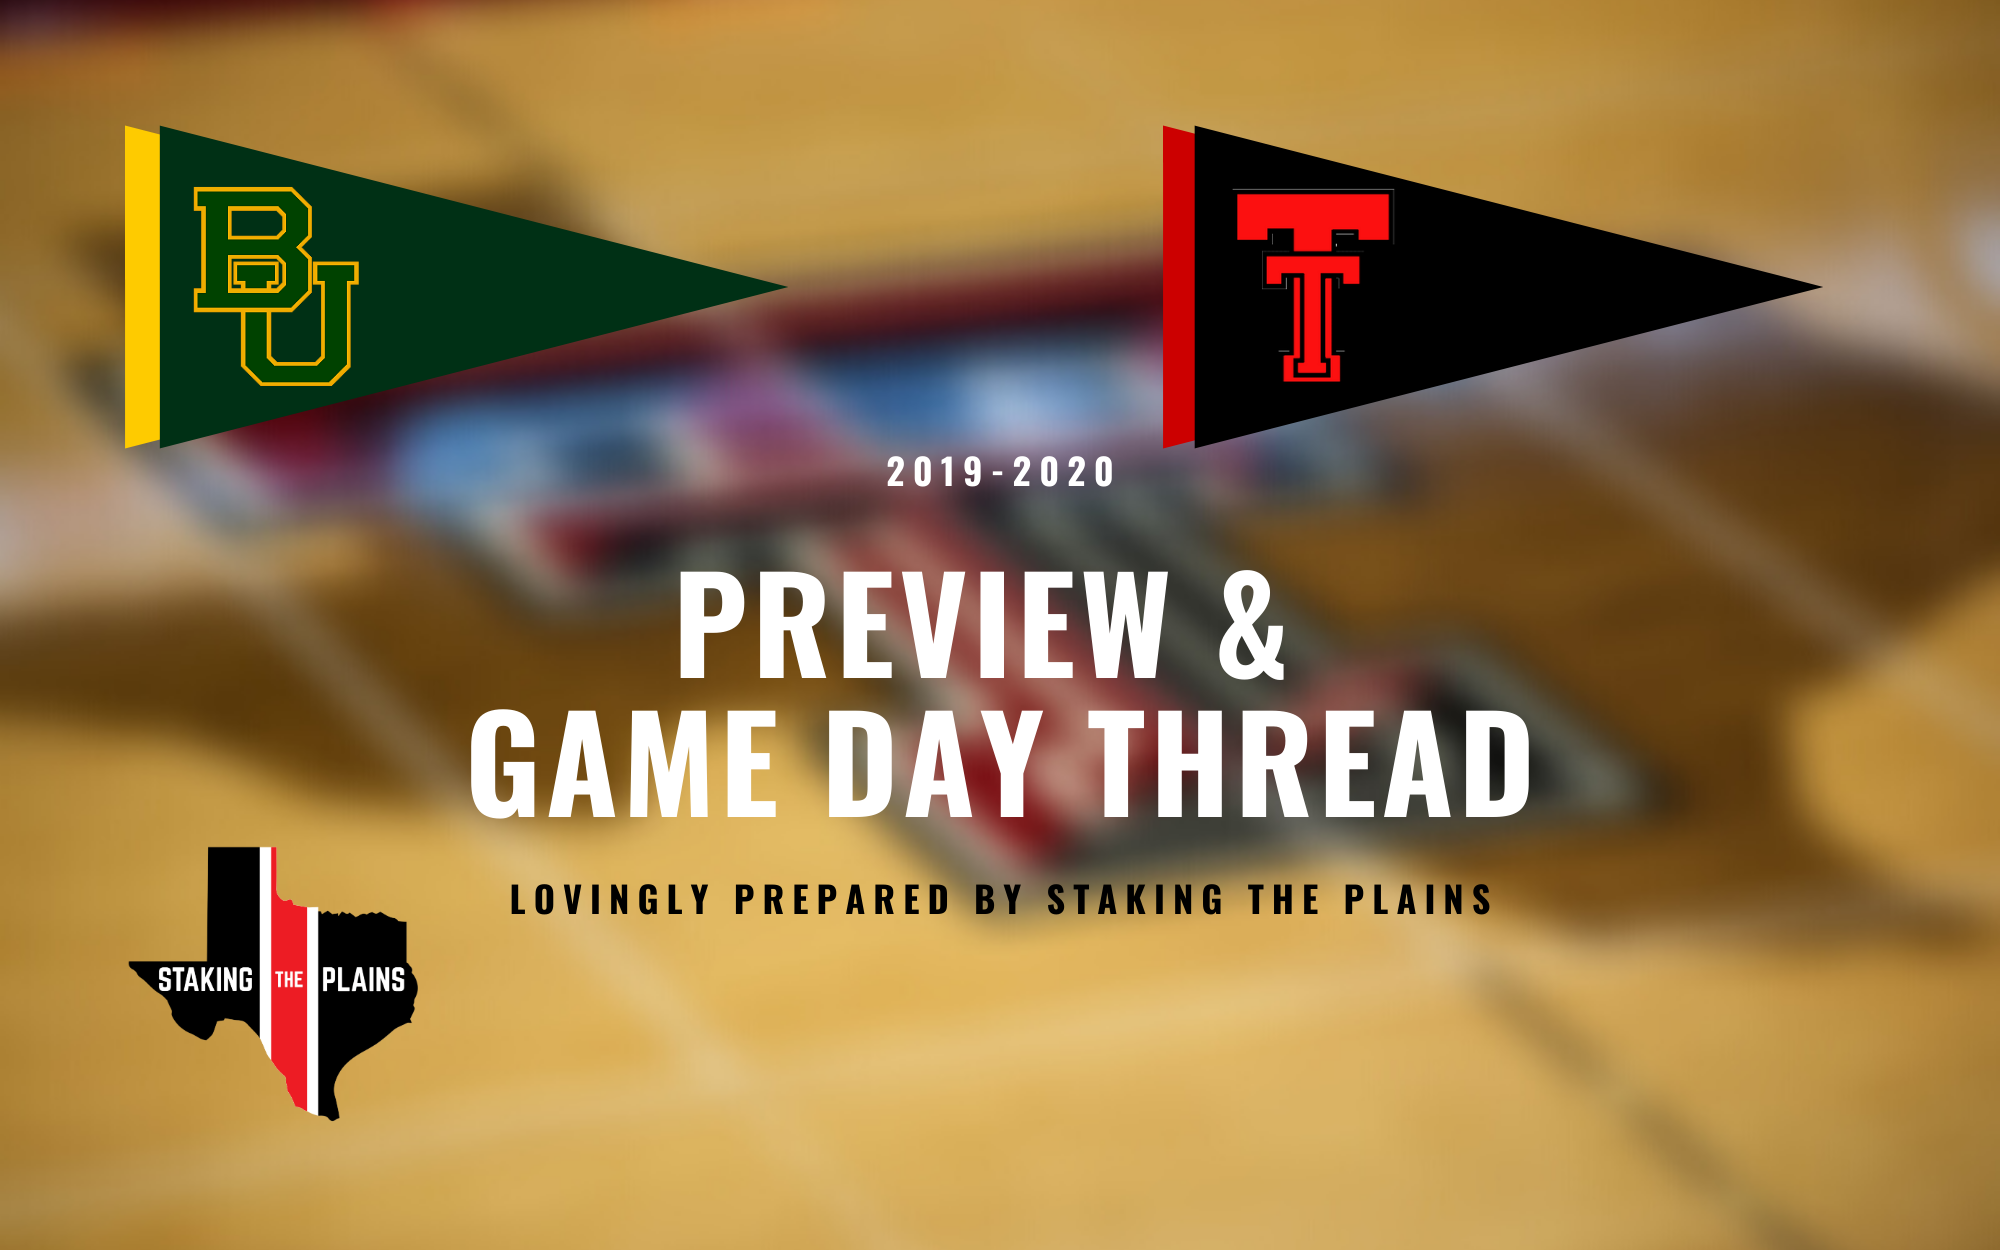 Preview & Game Day Thread: Baylor vs. Texas Tech